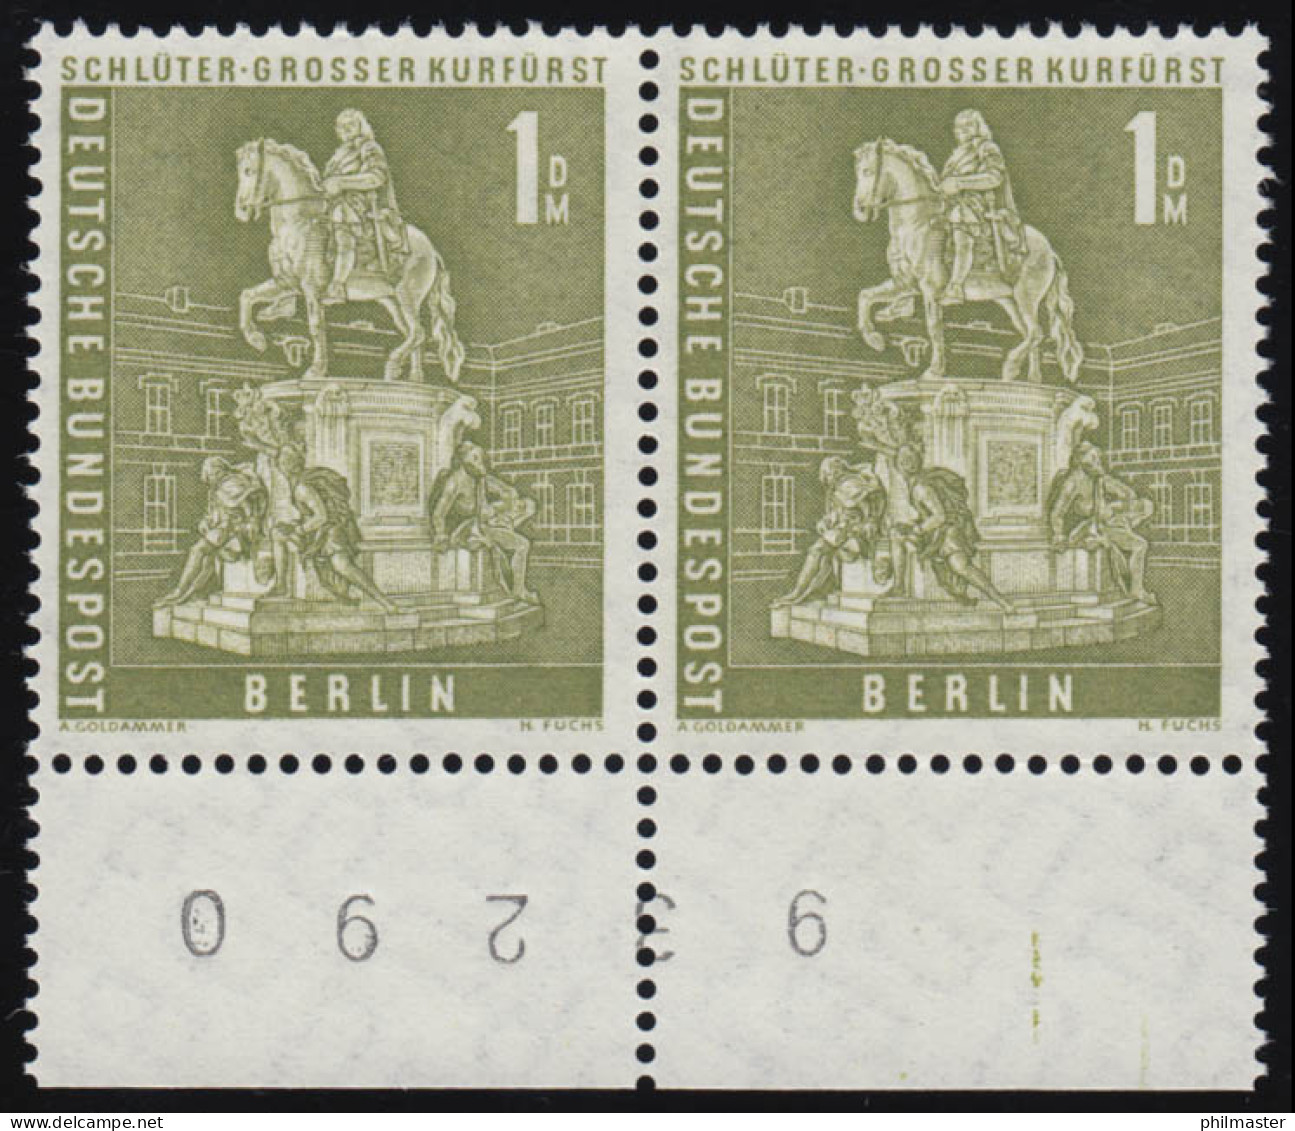 153w Stadtbilder 1 DM Randziffern-Paar Unten, ** Postfrisch - Unused Stamps